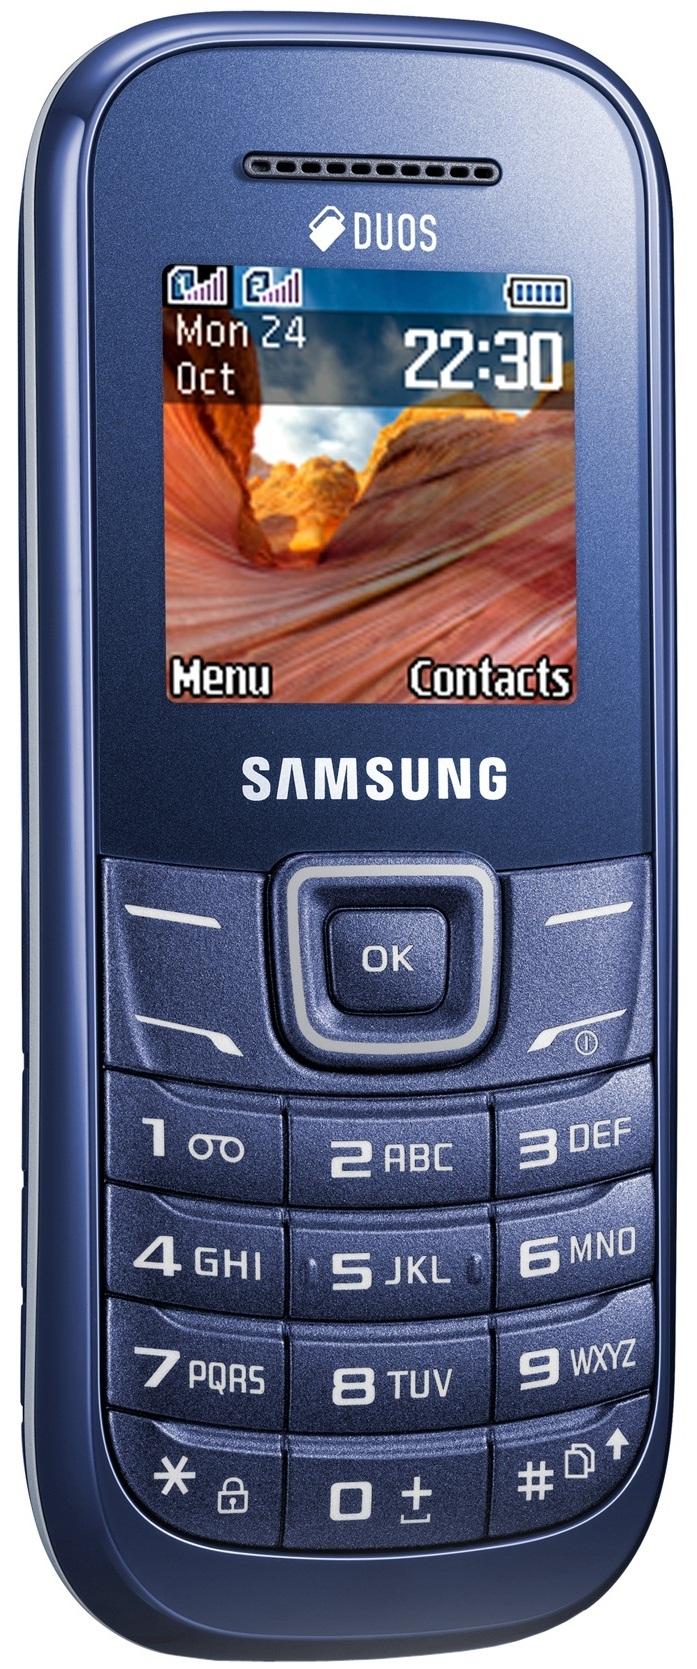 Samsung E1202 (Blue)